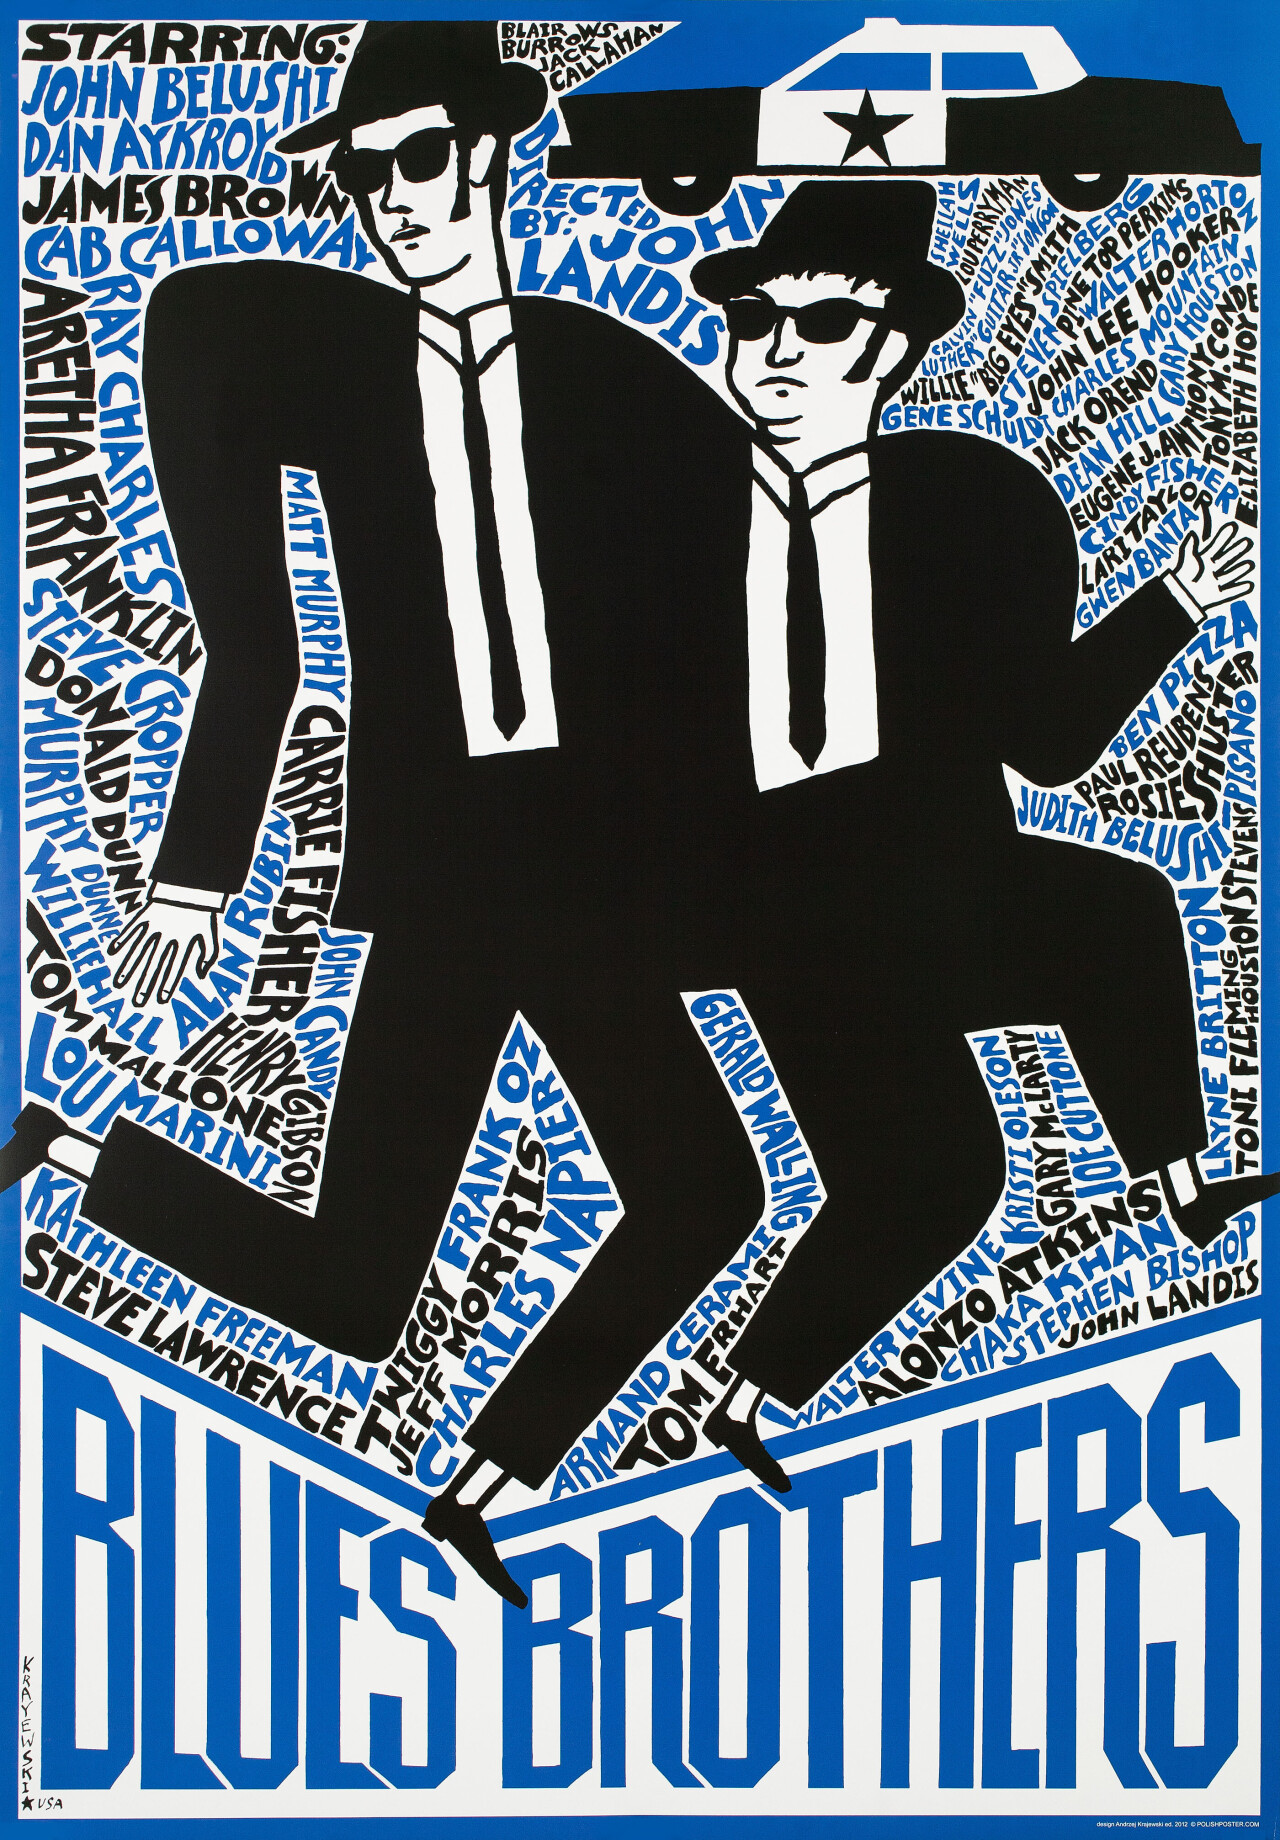 Братья Блюз (The Blues Brothers, 1980), режиссёр Джон Лэндис, польский постер к фильму, автор Анджей Краевский (графический дизайн, 2012 год)